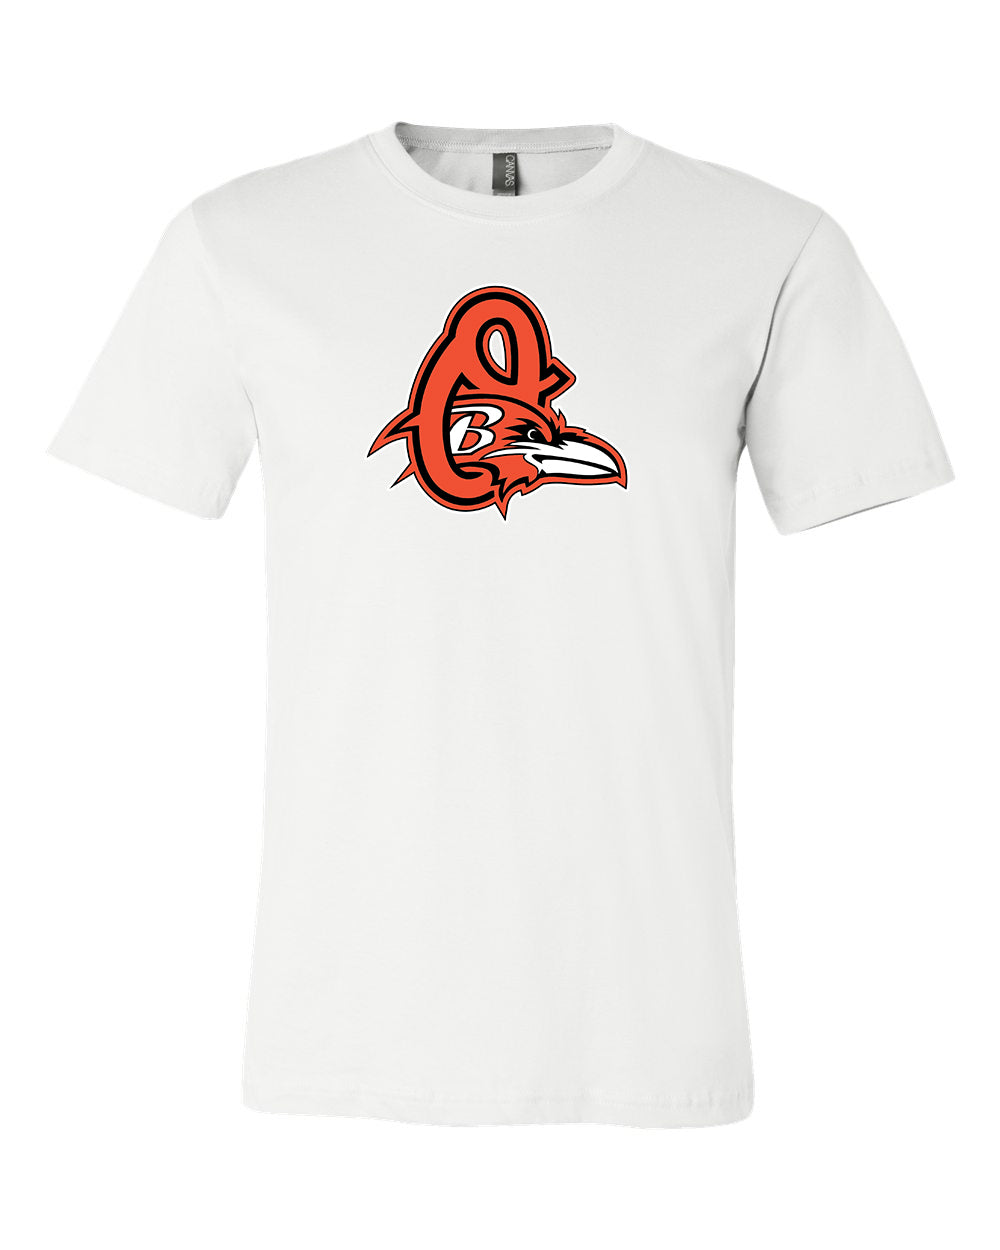 Baltimore Ravens Baltimore Orioles MASH UP Logo T-shirt 6 Sizes S-3XL!